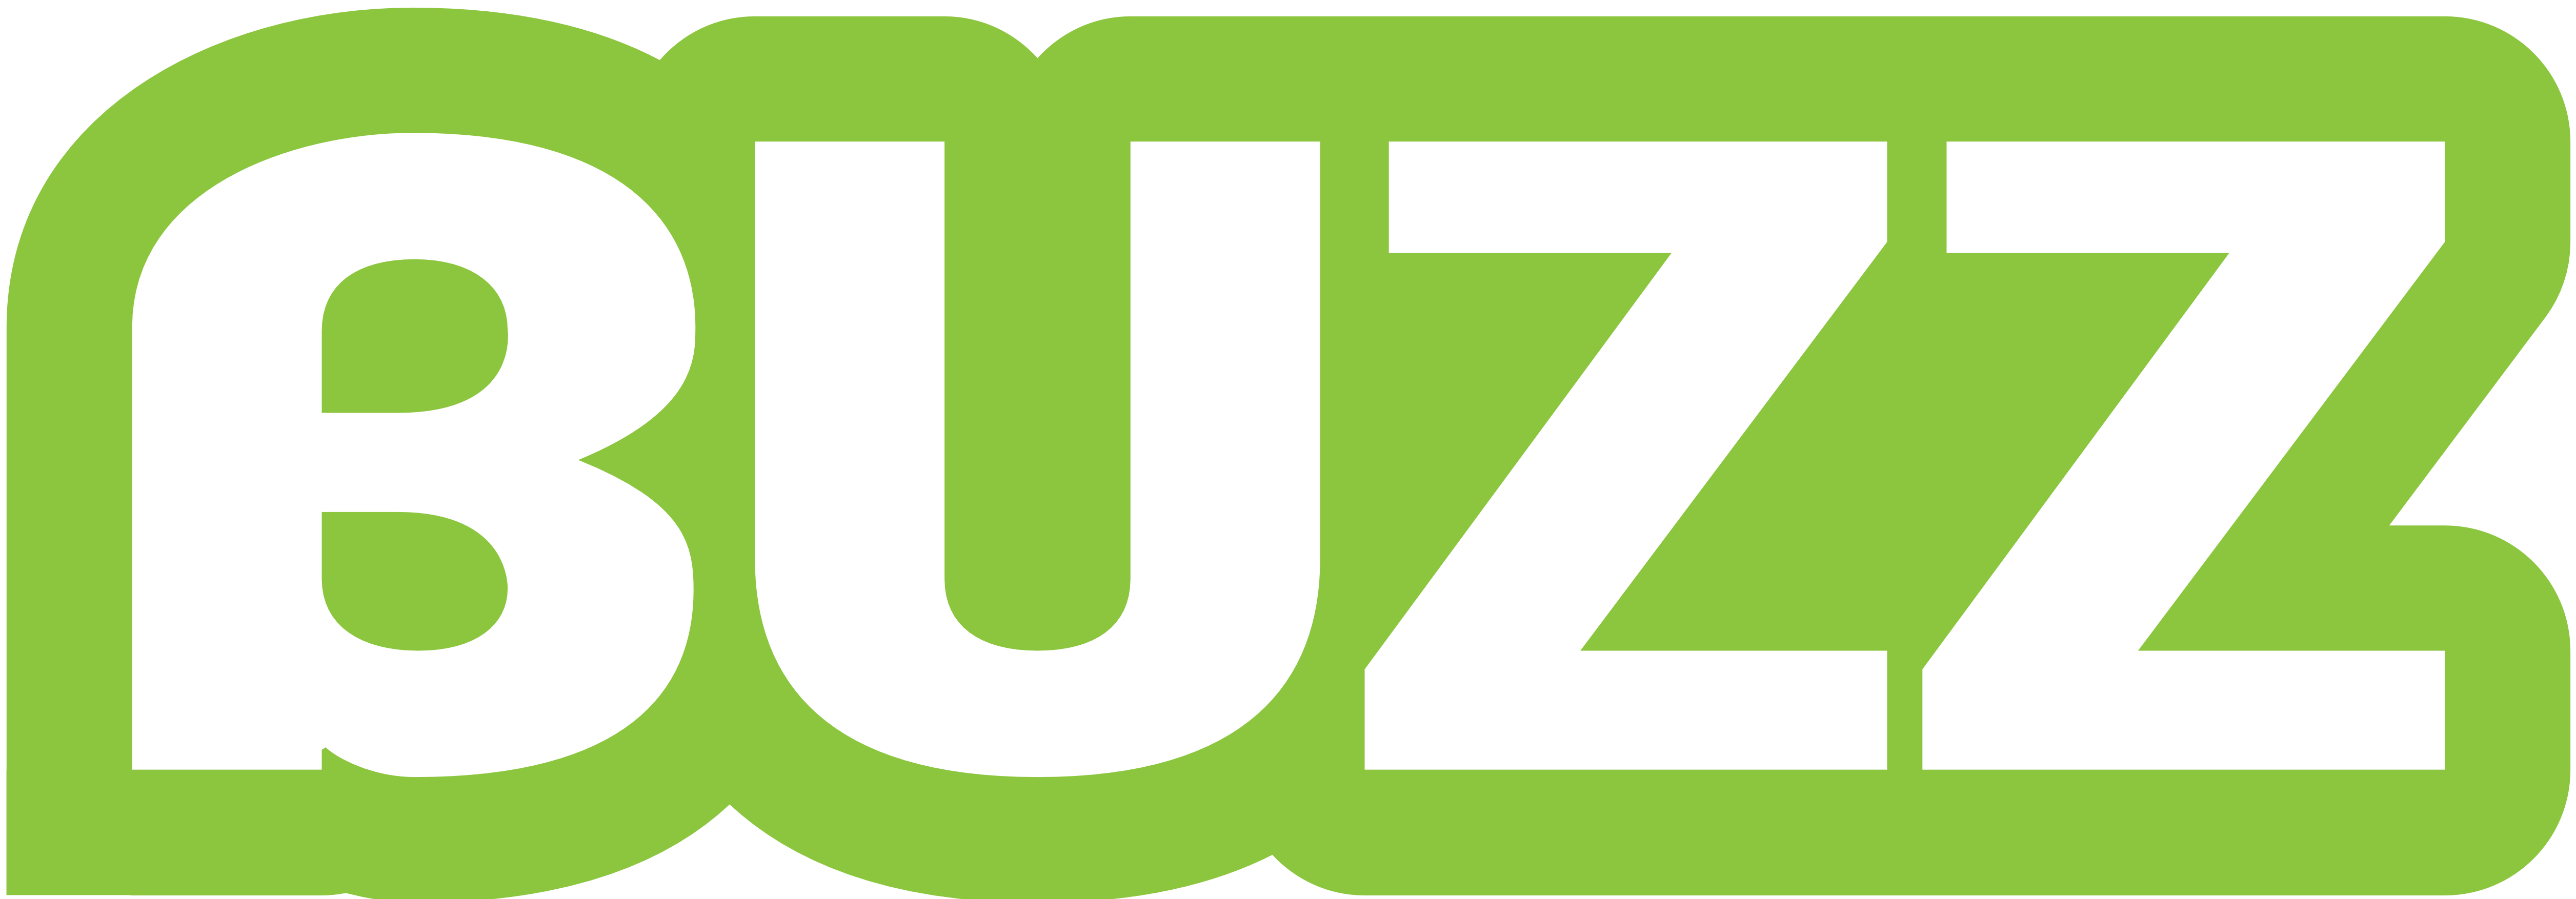 logo for Buzz Interactive